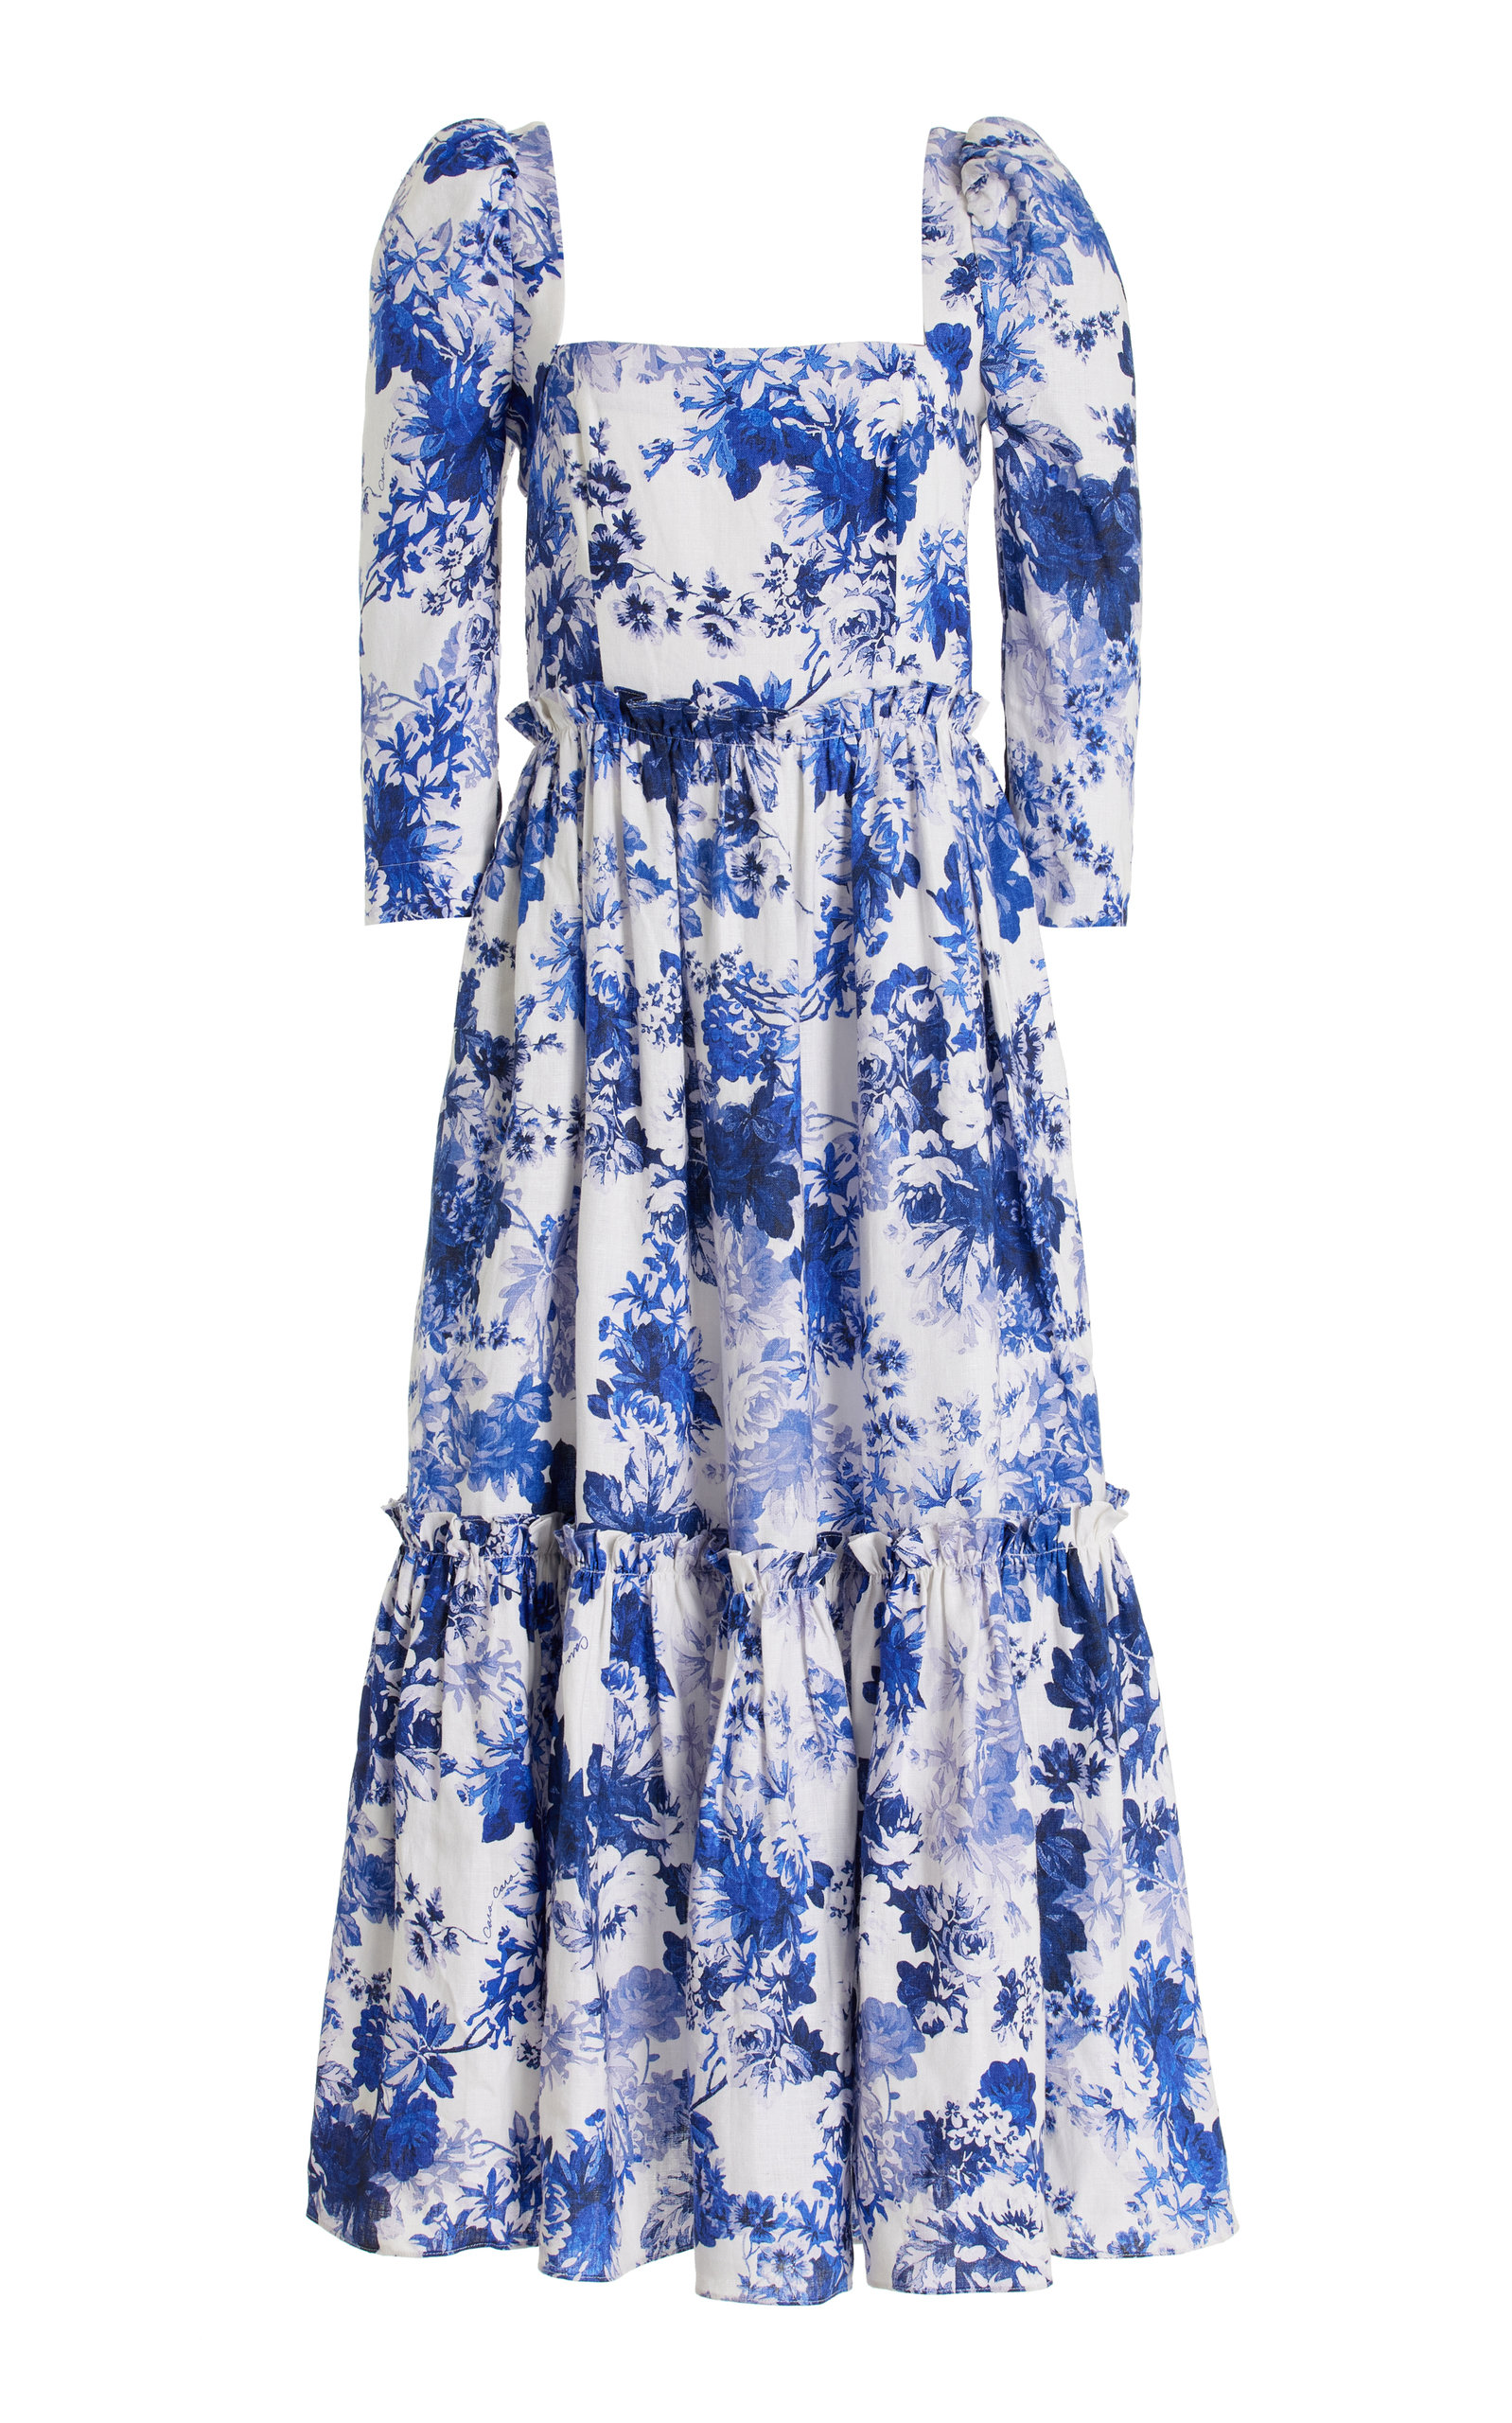 Cara Cara Women's Blue Hill Linen Dress